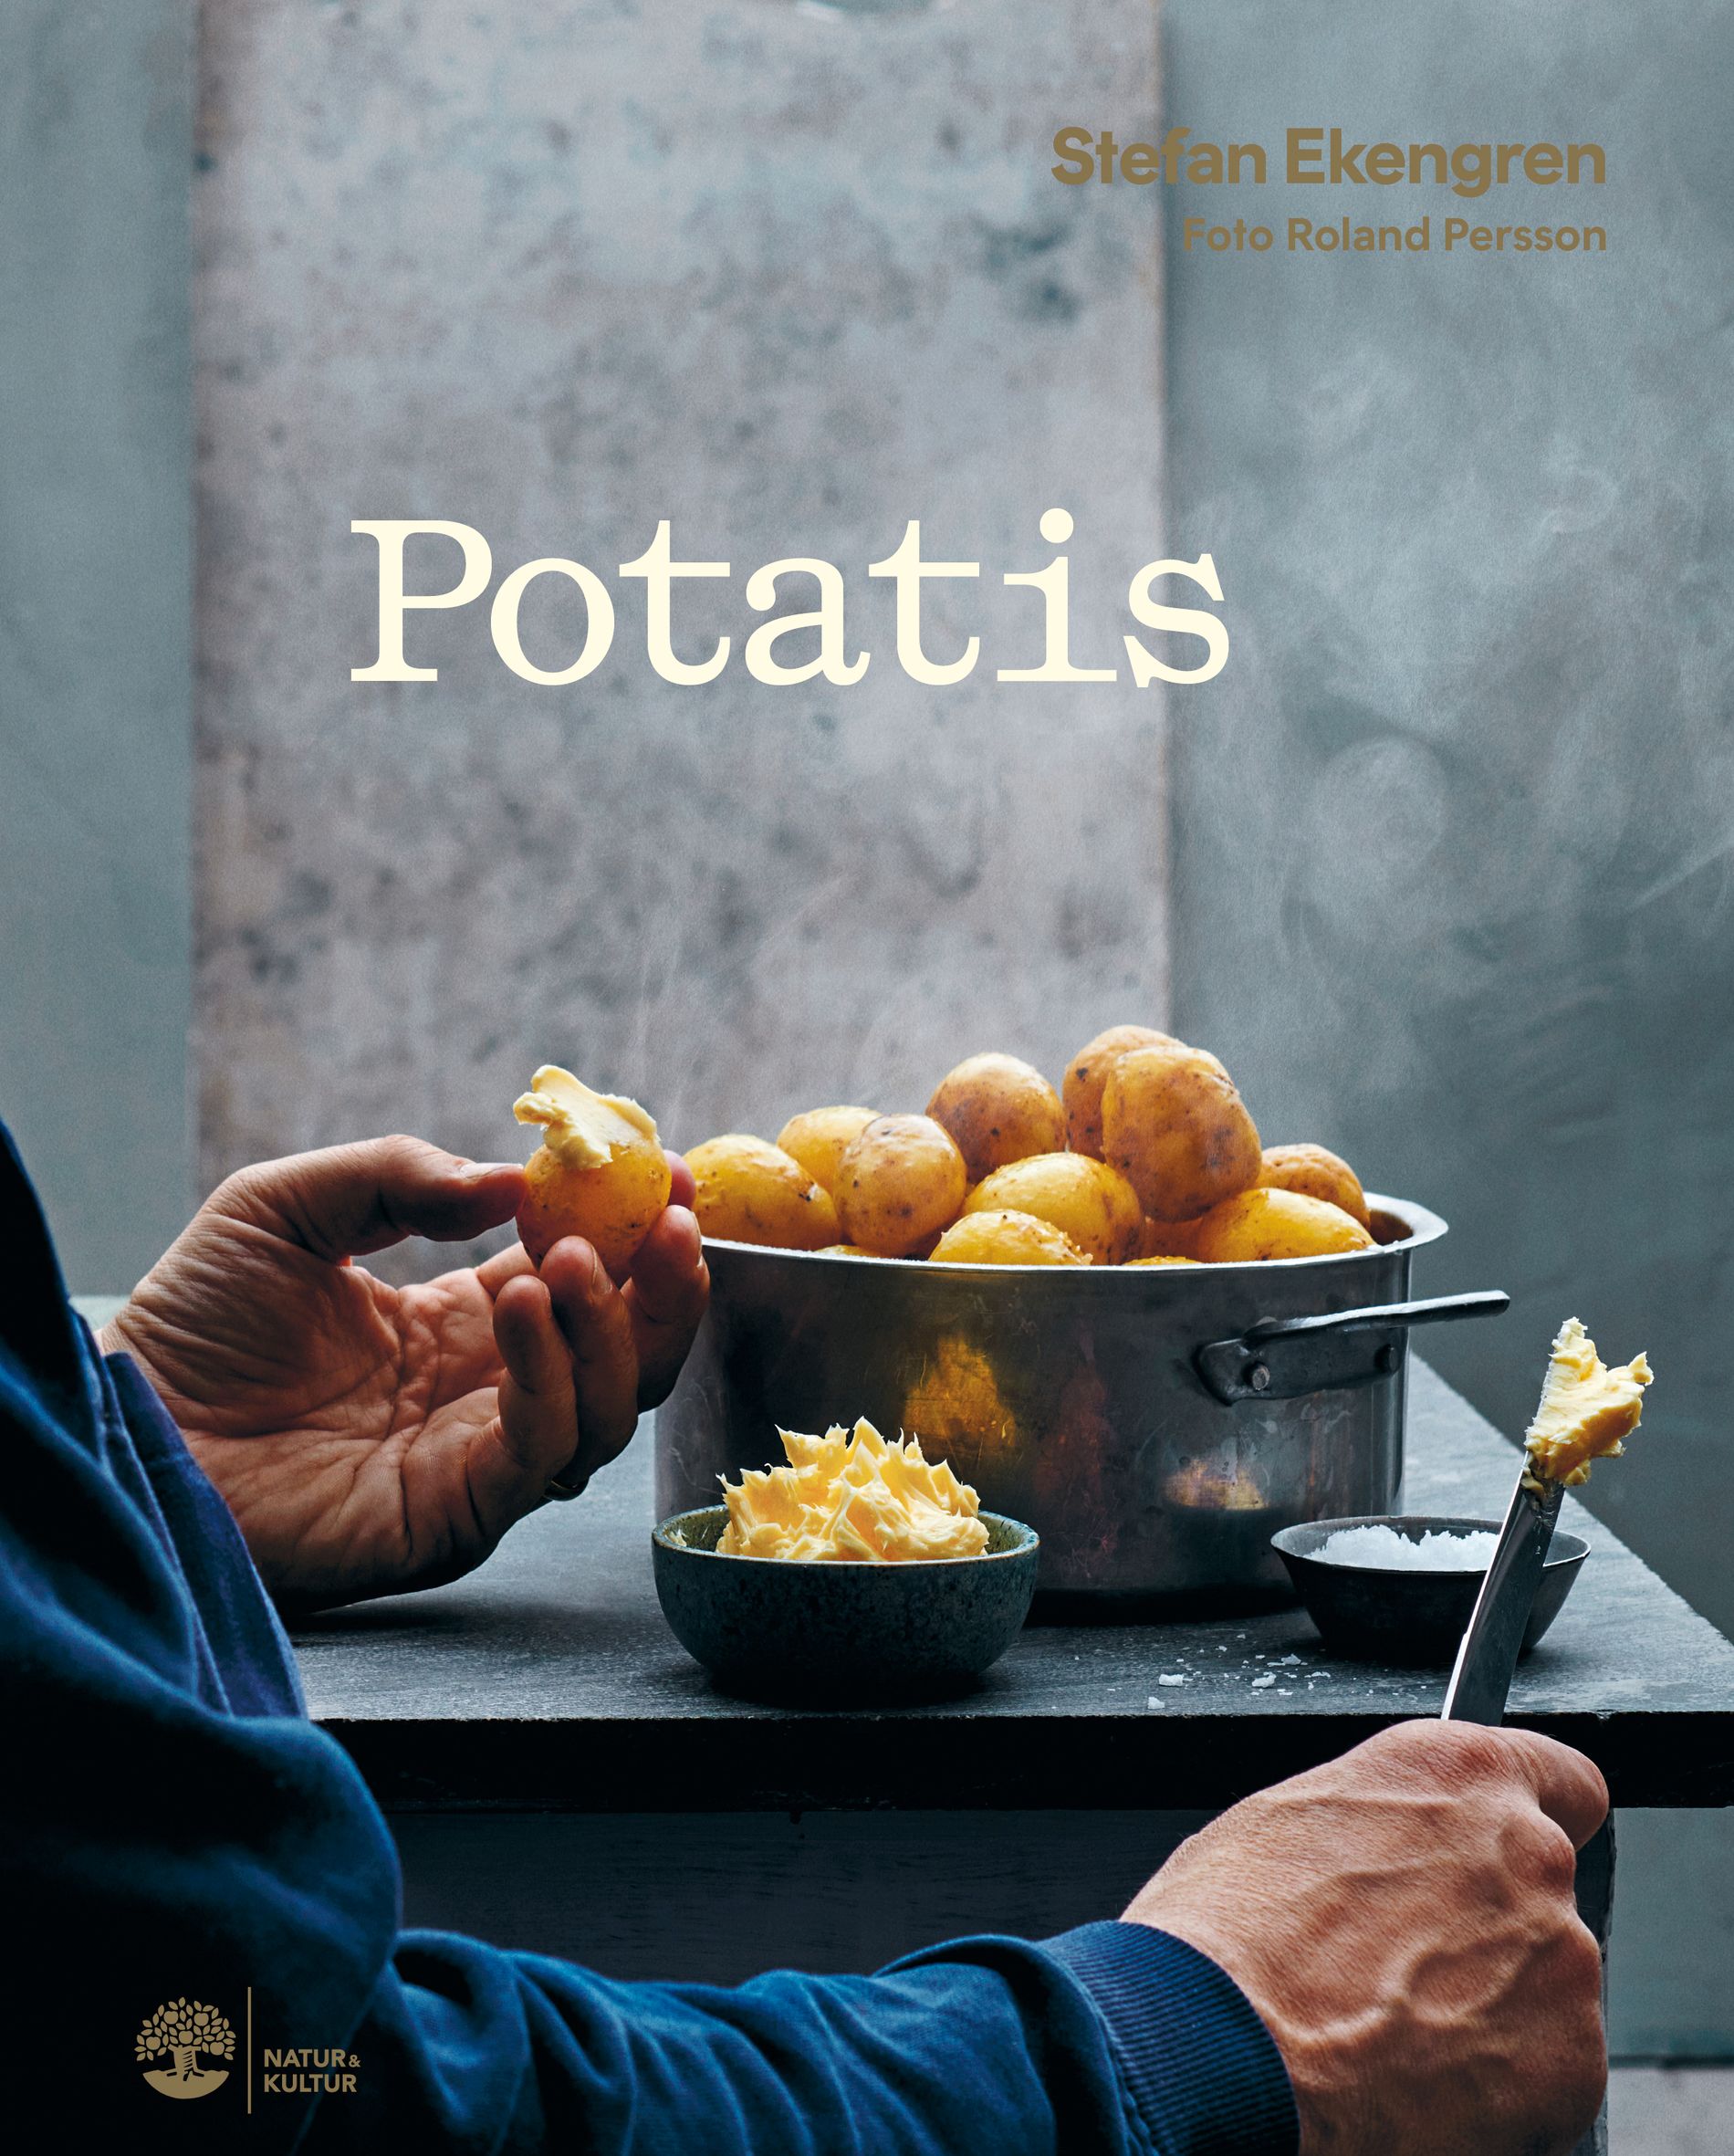 Potatis (Natur & Kultur)